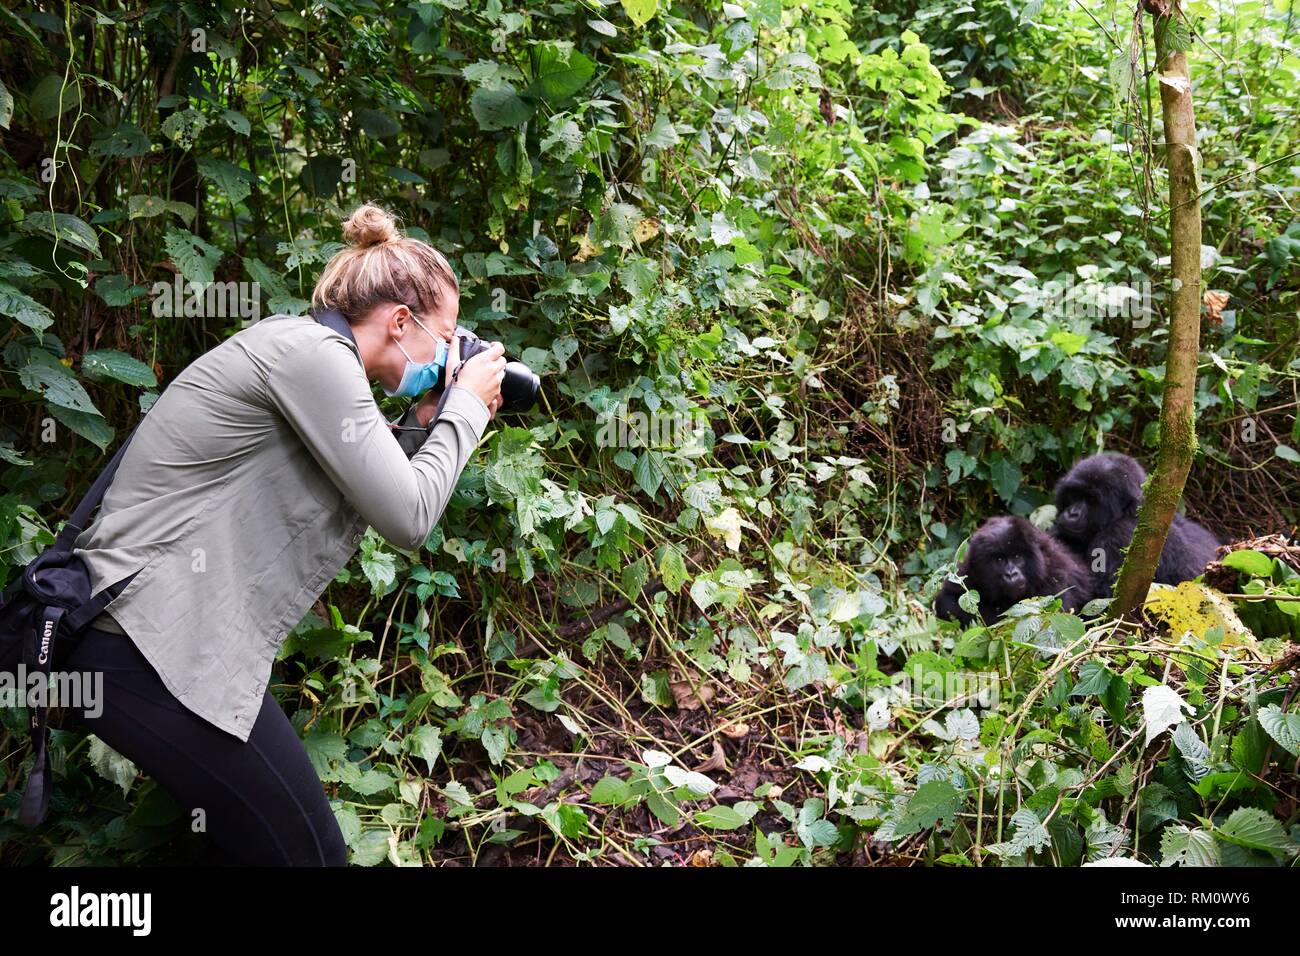 Turista fotografiando gorila de montaña (gorilla beringei beringei). Todos los seres humanos tienen que llevar máscaras de seguridad en presencia de los gorilas para evitar cualquier Foto de stock